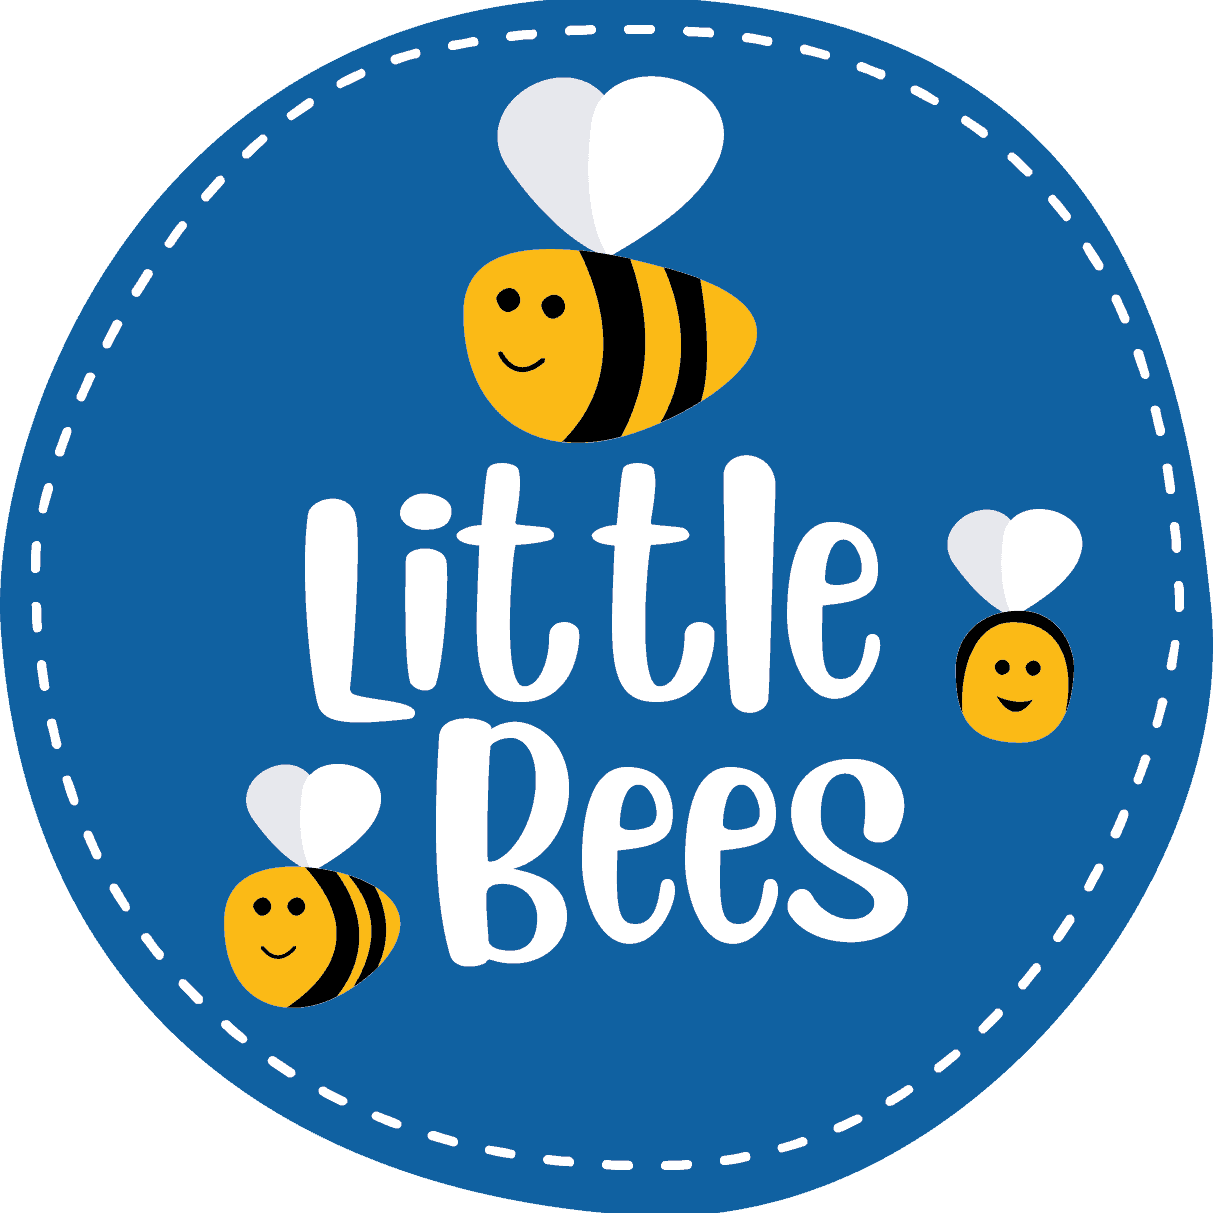 Little Bee logo 5